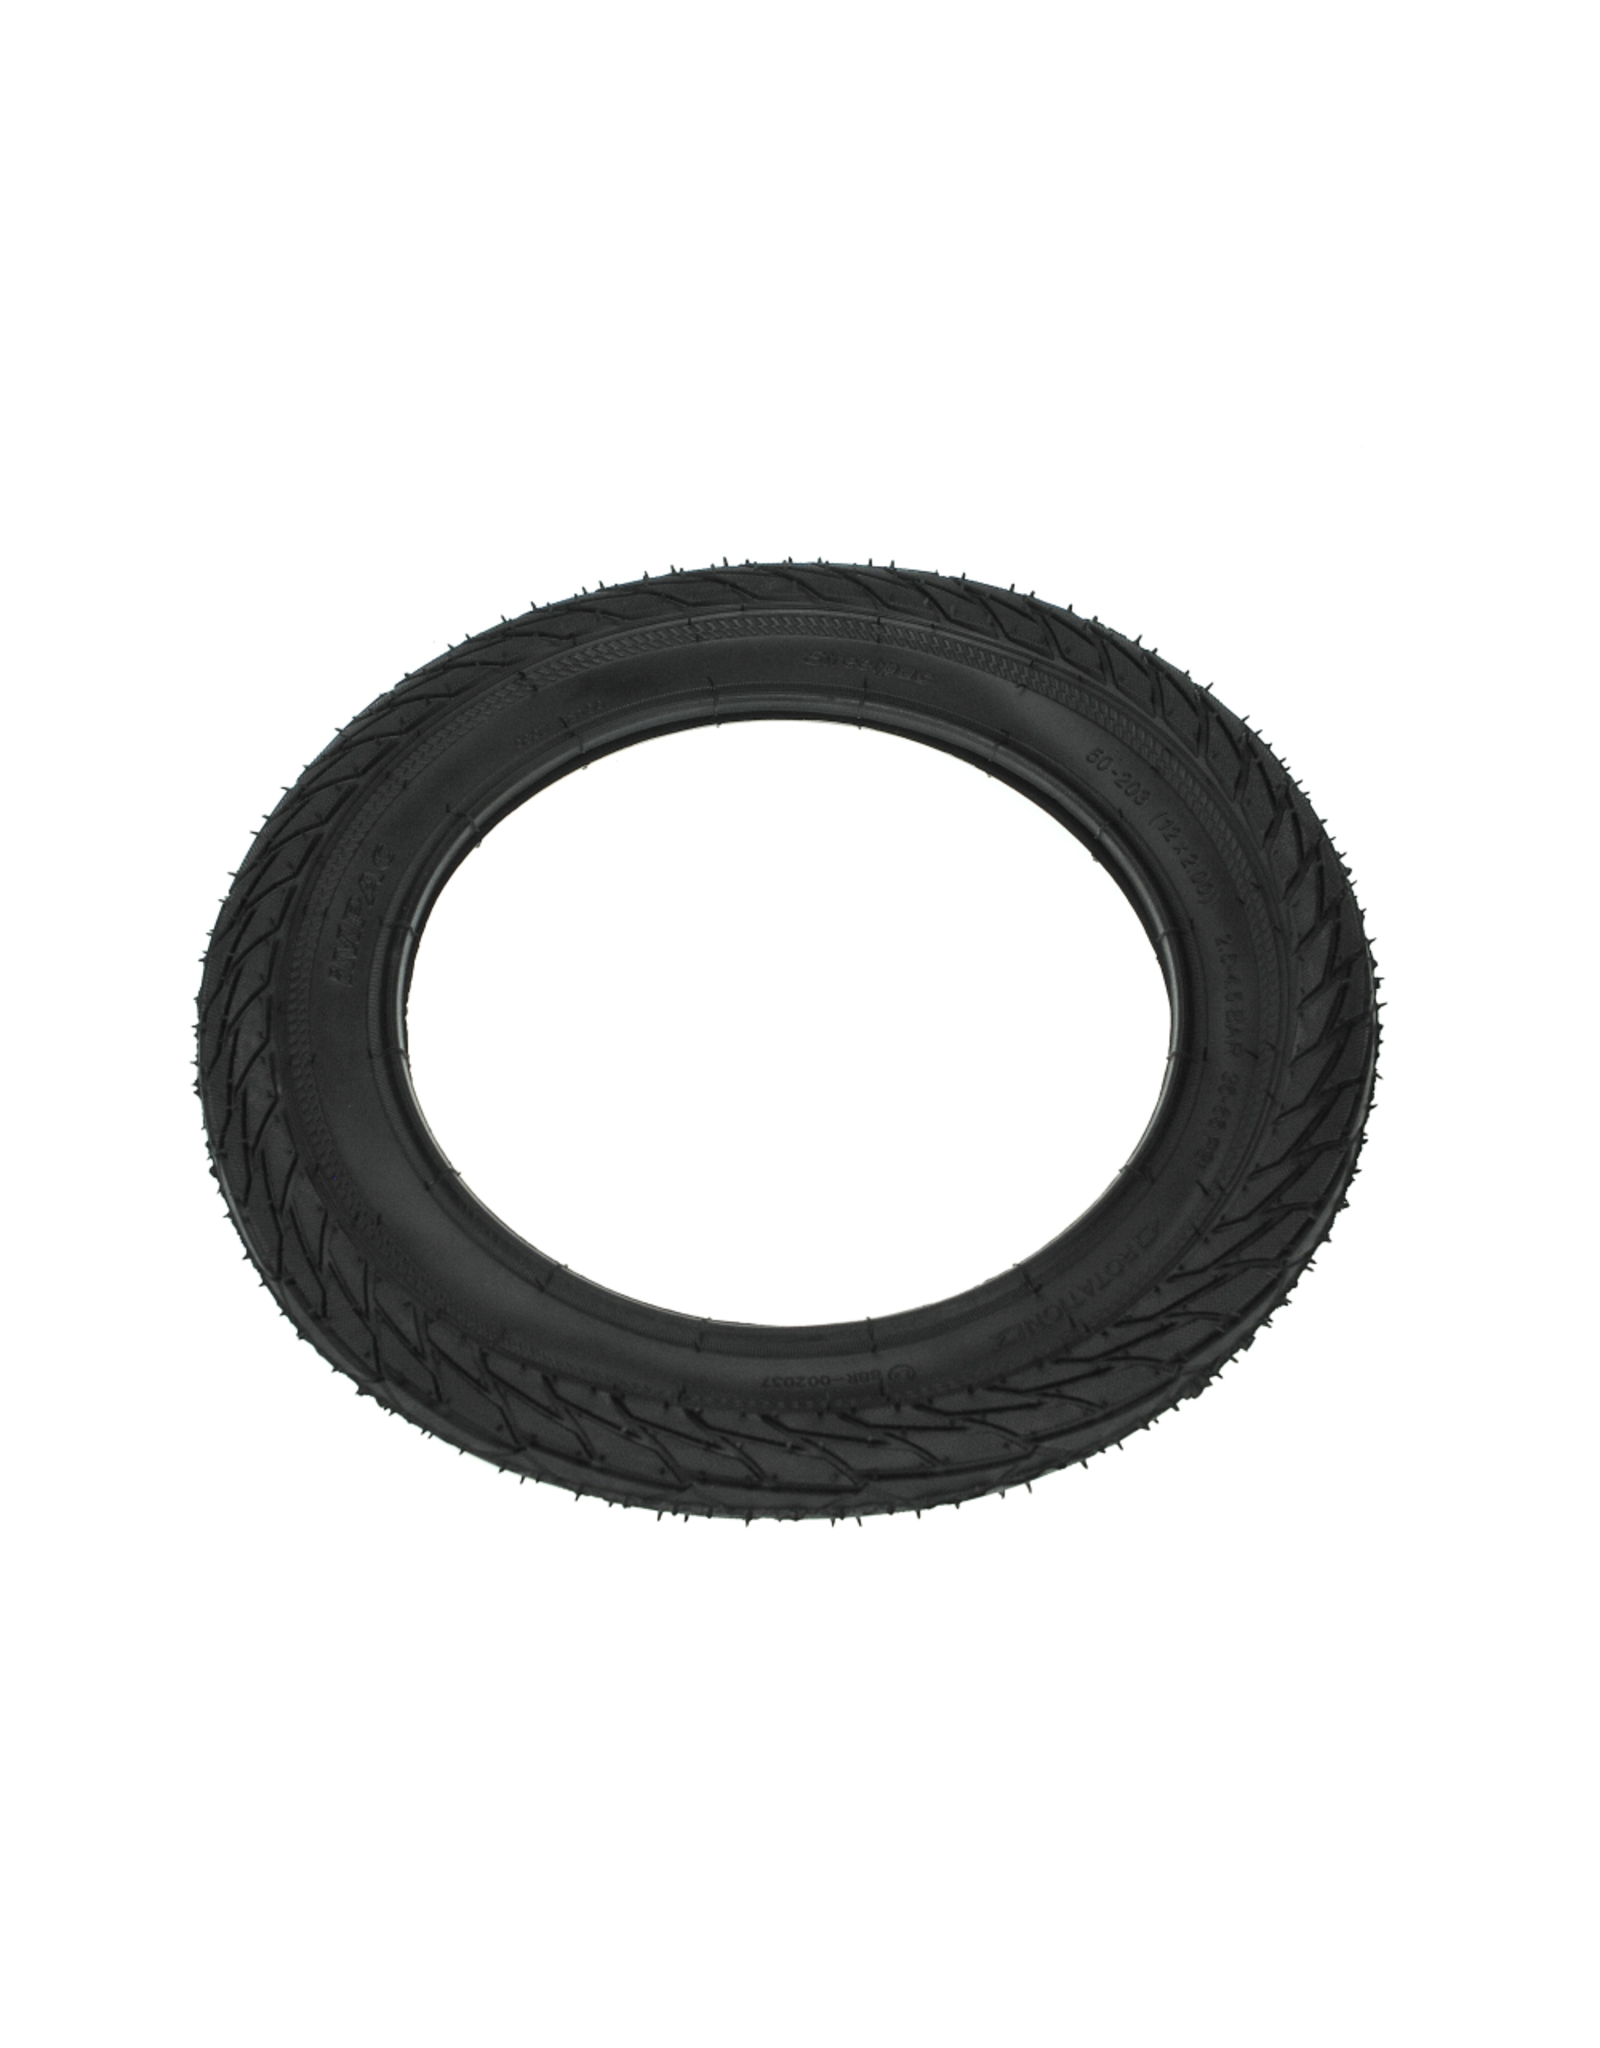 Puky Puky - Tire 50-203, 12 x 2.00, black